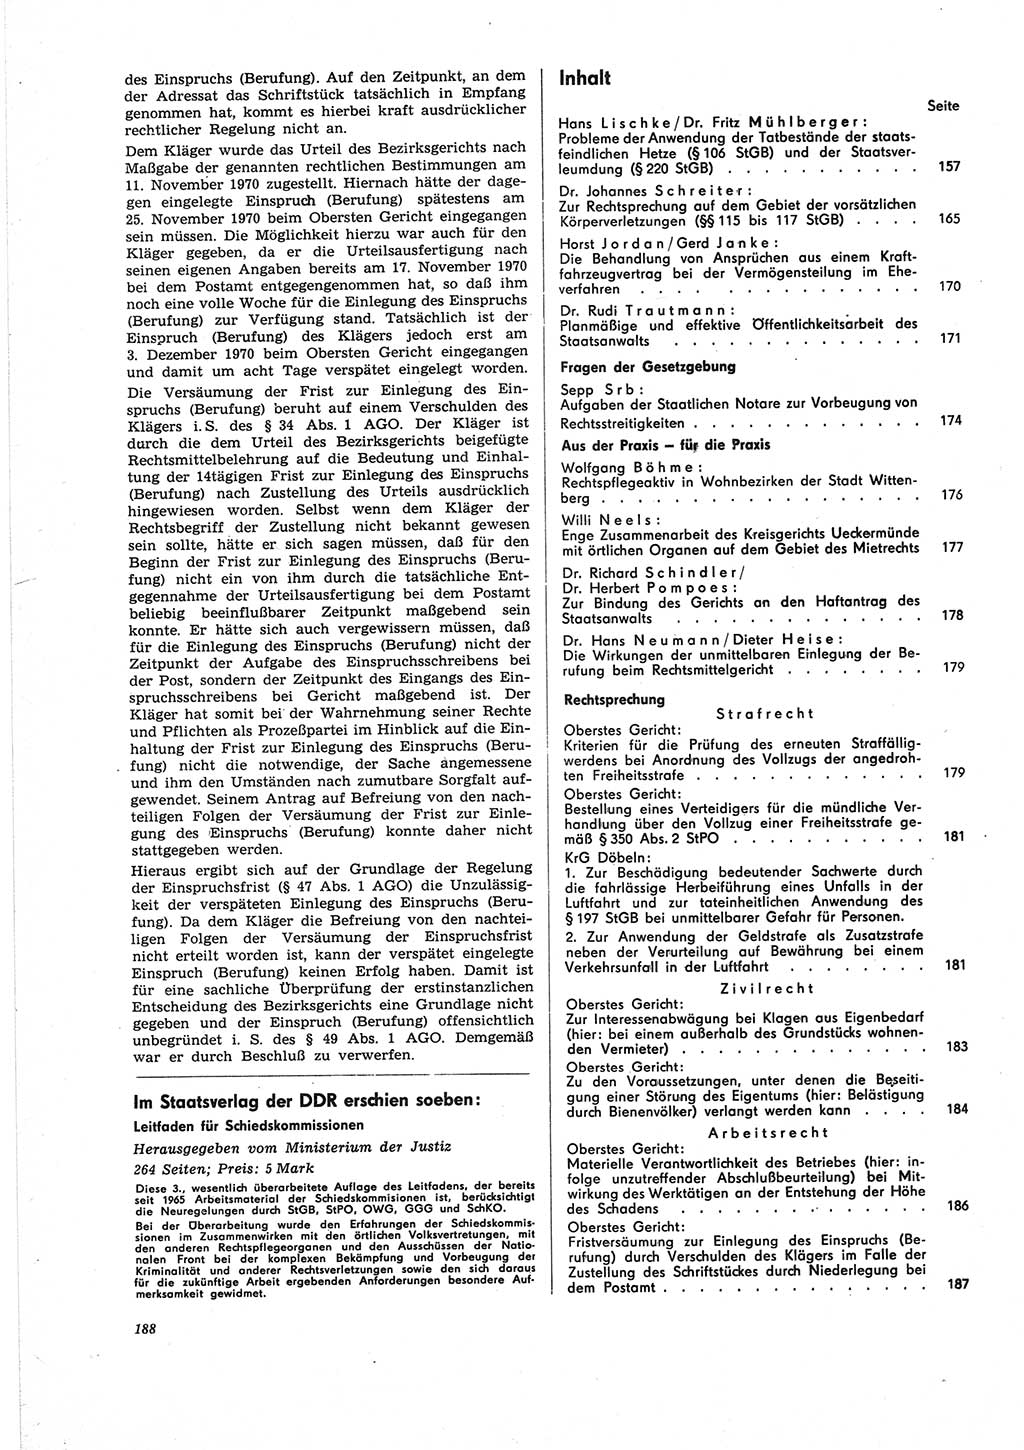 Neue Justiz (NJ), Zeitschrift für Recht und Rechtswissenschaft [Deutsche Demokratische Republik (DDR)], 25. Jahrgang 1971, Seite 188 (NJ DDR 1971, S. 188)